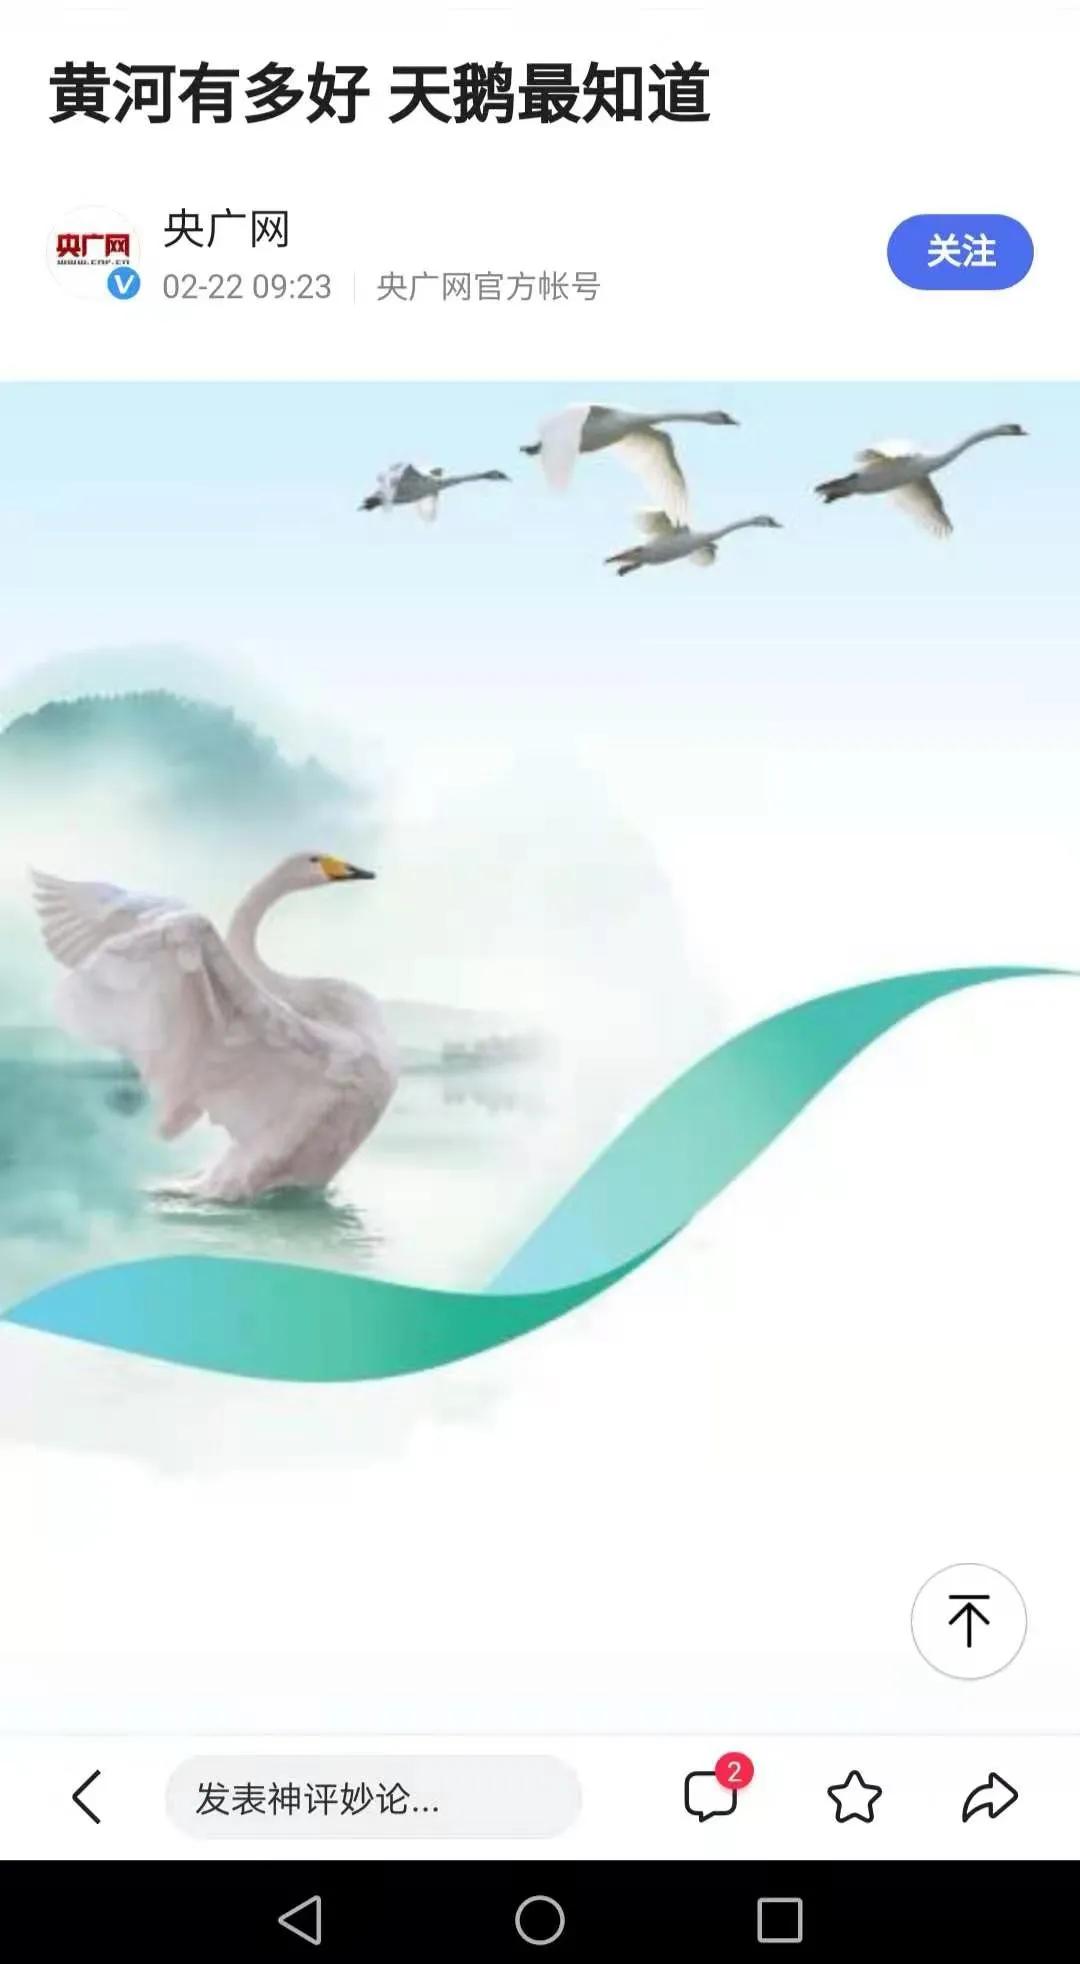 白天鹅为河南生态环境代言